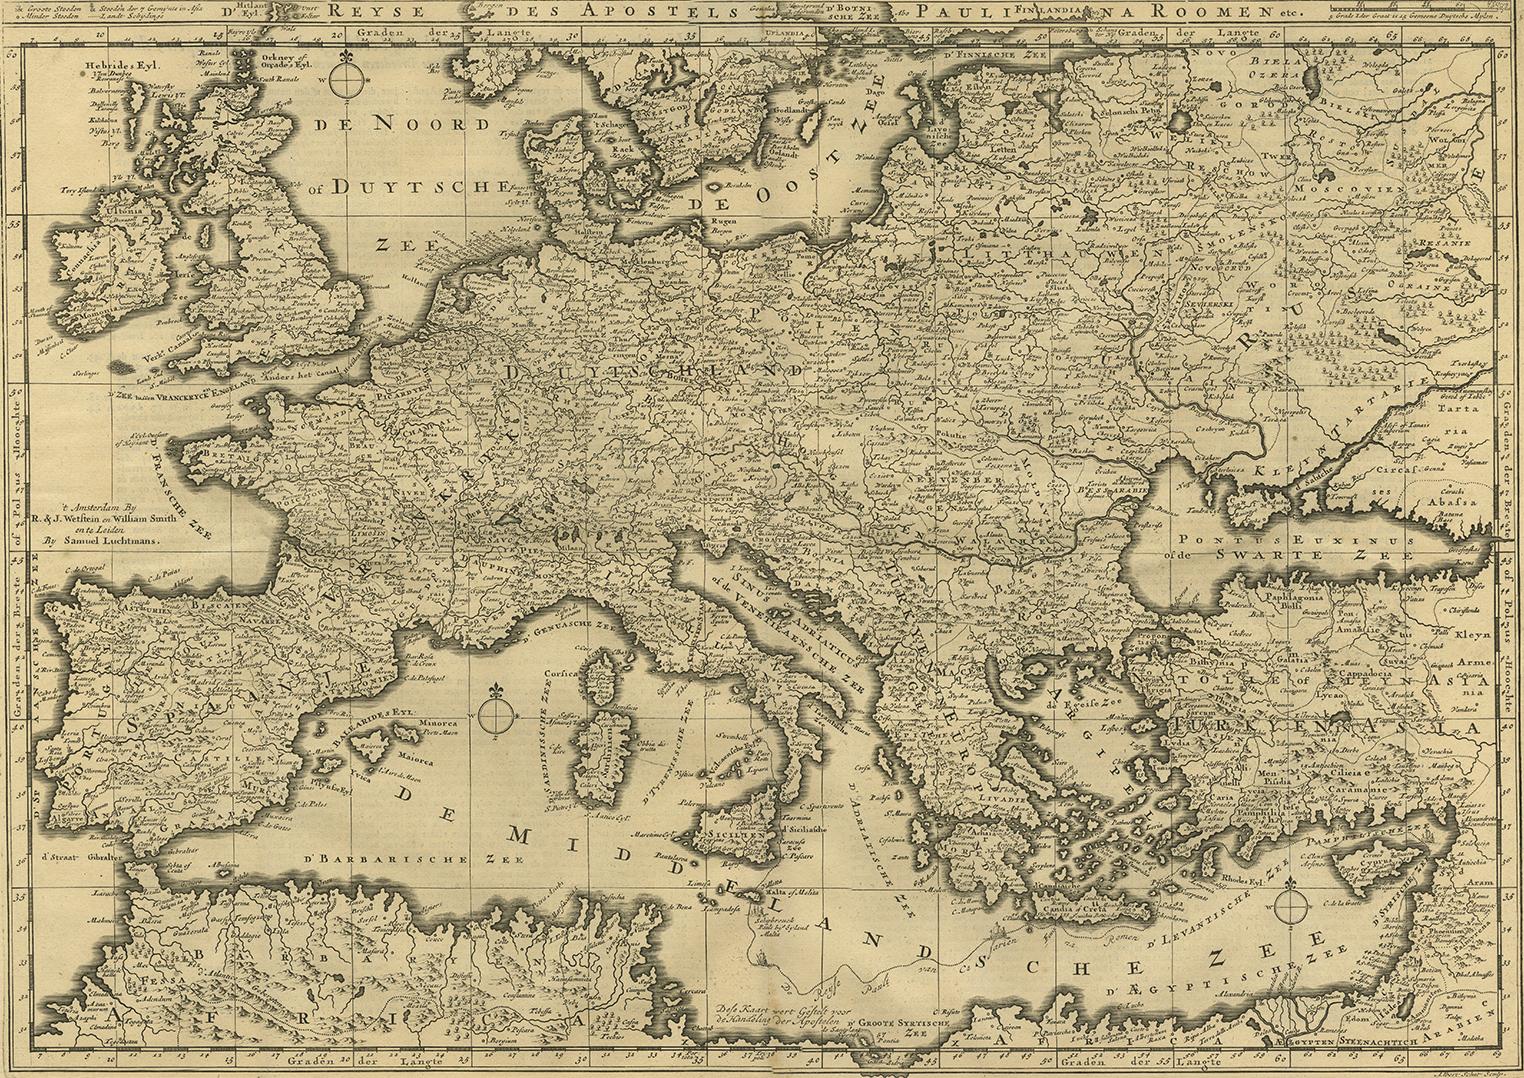 Carte ancienne de la Méditerranée et d'une grande partie de l'Europe, illustrant le voyage de saint Paul à Rome. Cette carte provient de la 